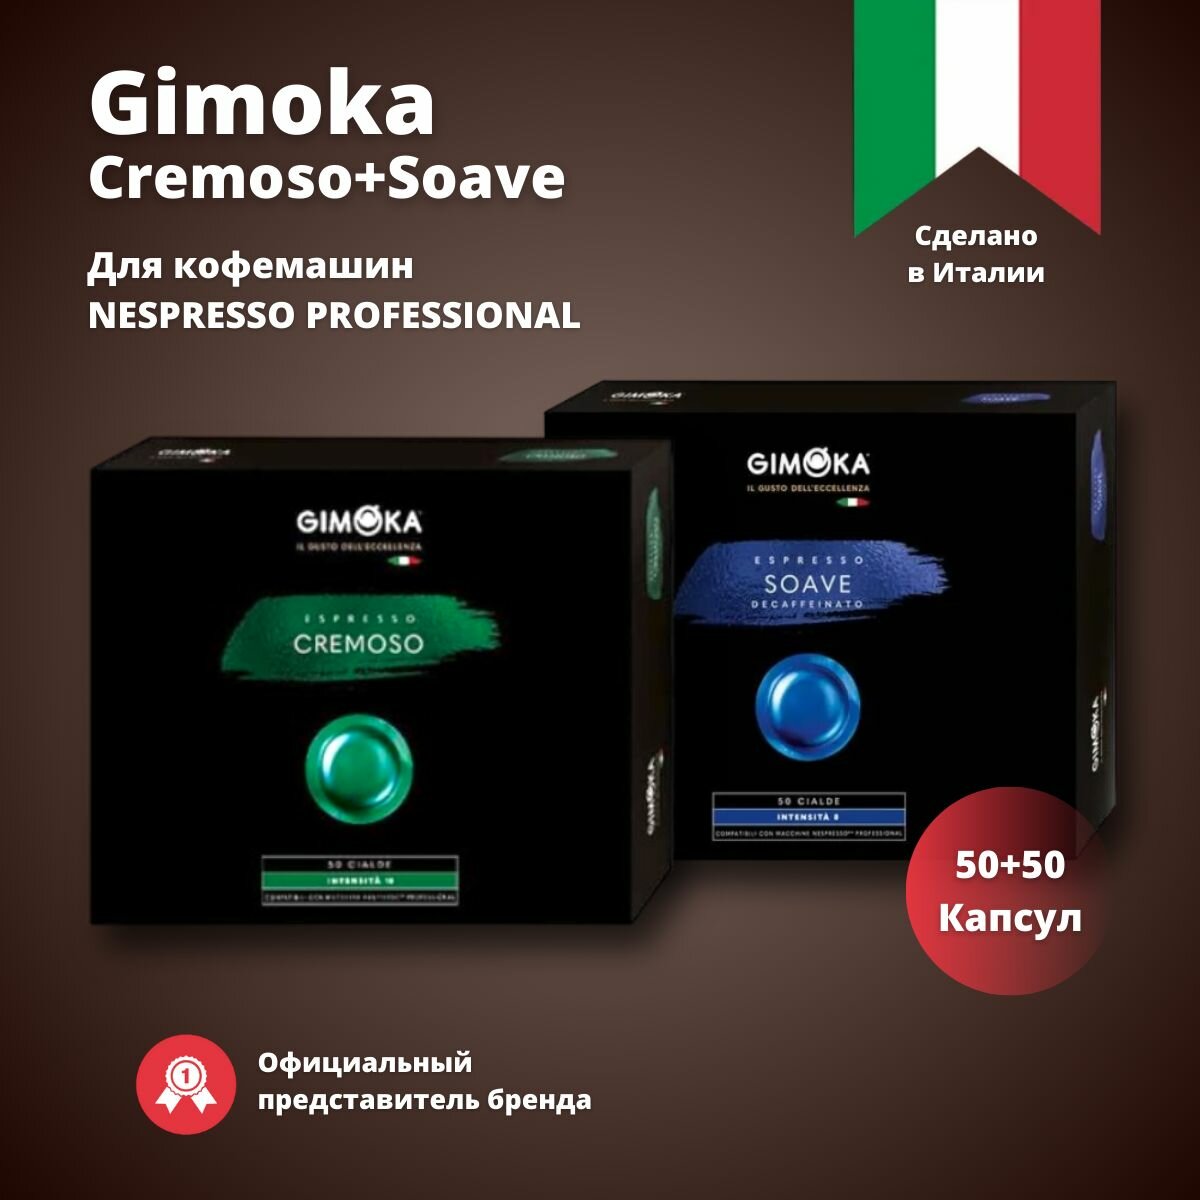 Кофе в капсулах Gimoka Cremoso+Soave,2 упаковки по 50 шт. / Для кофемашин Nespresso Professional